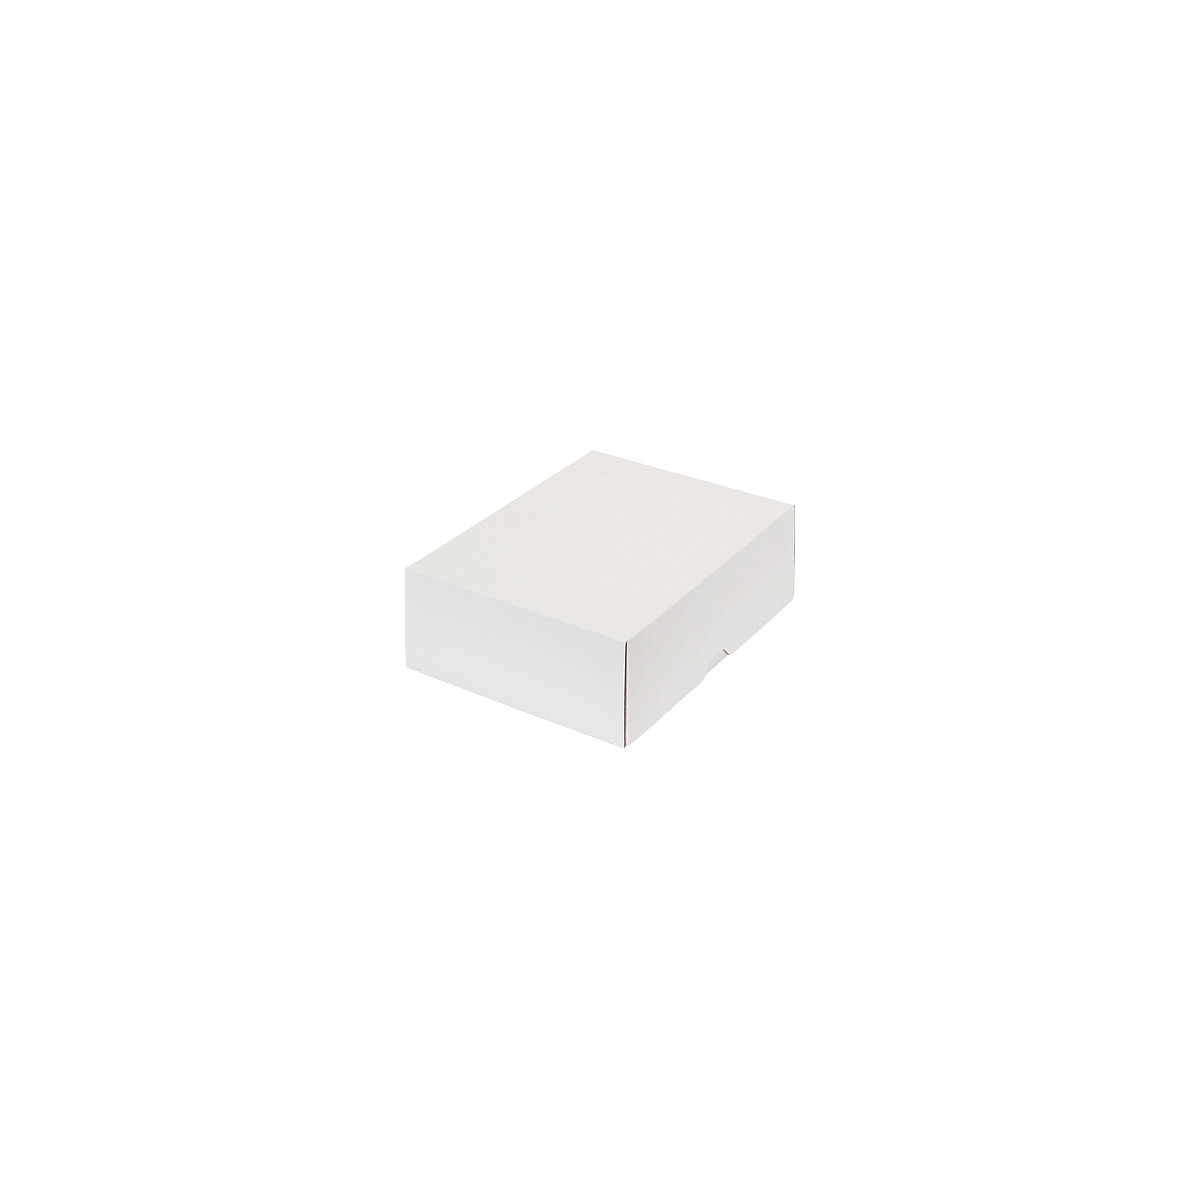 Stülpdeckelkarton, zweiteilig, Innenmaße 252 x 180 x 79 mm, B5, weiß, ab 30 Stk-14